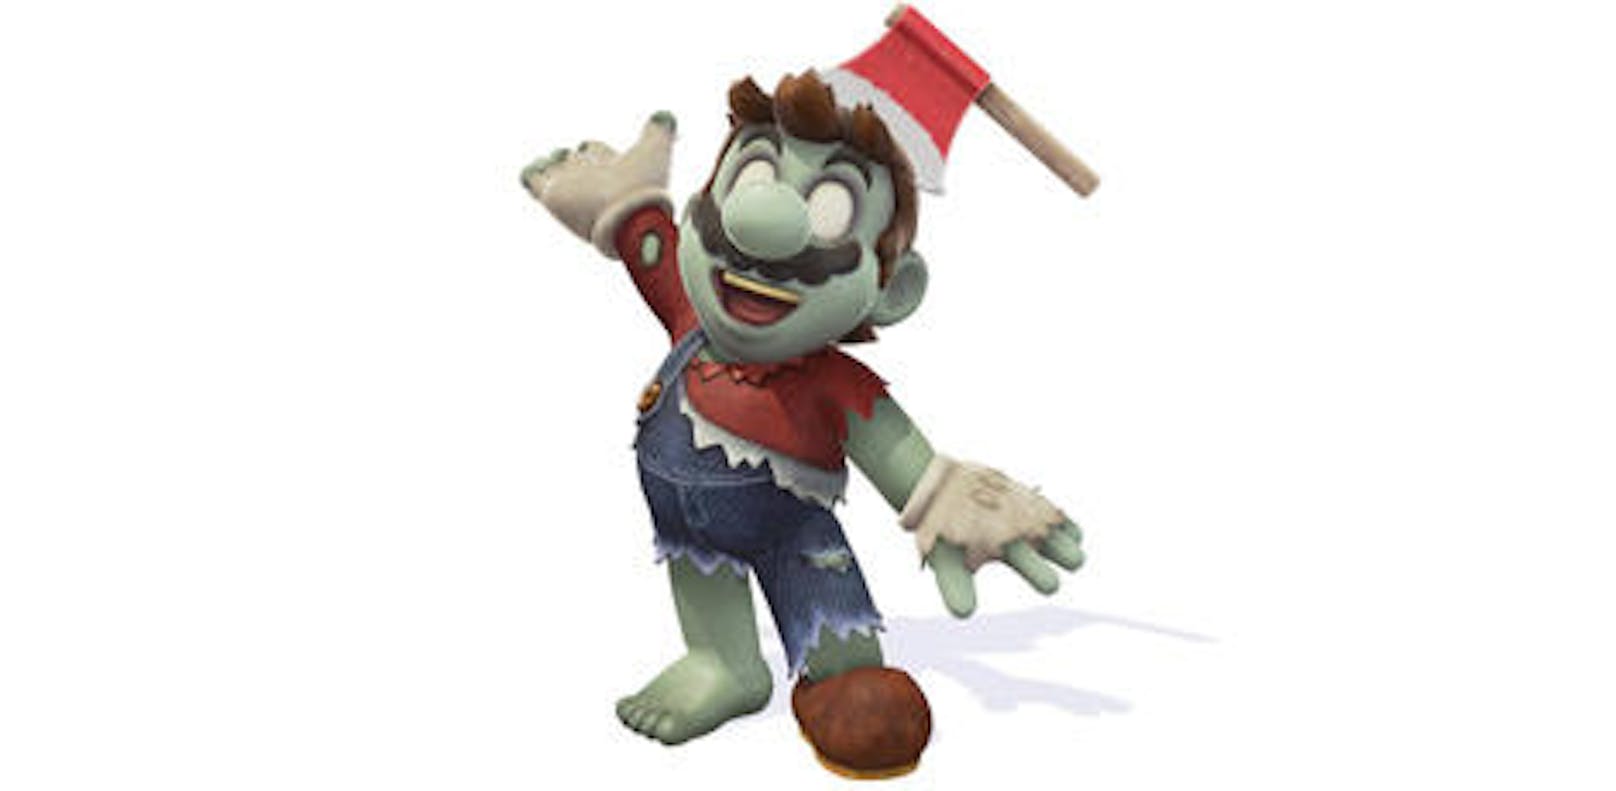 <b>19. Oktober 2018:</b> Halloween wirft auch in der Game-Welt seinen Schatten voraus. Passend zum Fest zeigt sich Mario als Zombie in dem Switch-Titel Super Mario Odyssey. Das neue Kostüm, das dem Spiele-Shop hinzugefügt wurde, verwandelt Mario in eine Gestalt mit zerrissener Kleidung, leblosen Augen und einer Axt im Kopf. Außerdem gibt es drei neue Filter für den Snapshot-Modus.